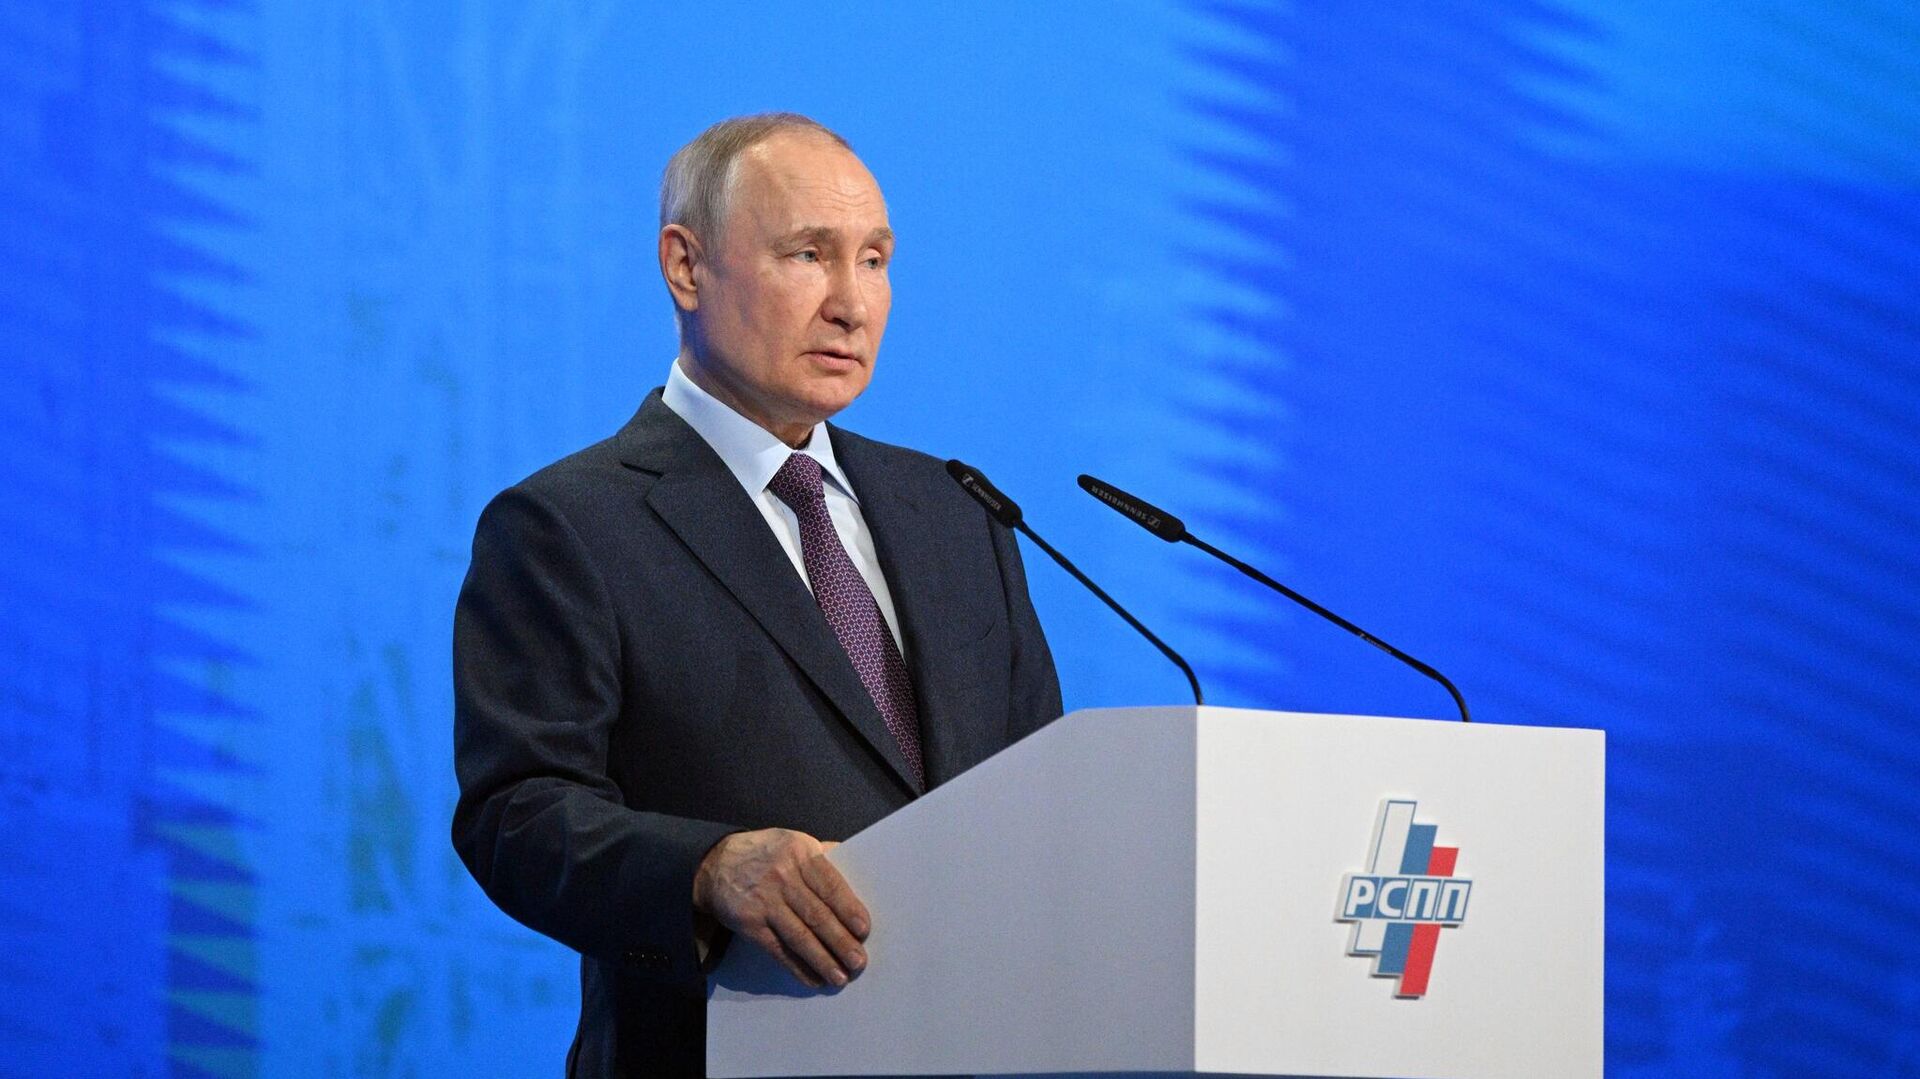 Президент России Владимир Путин0